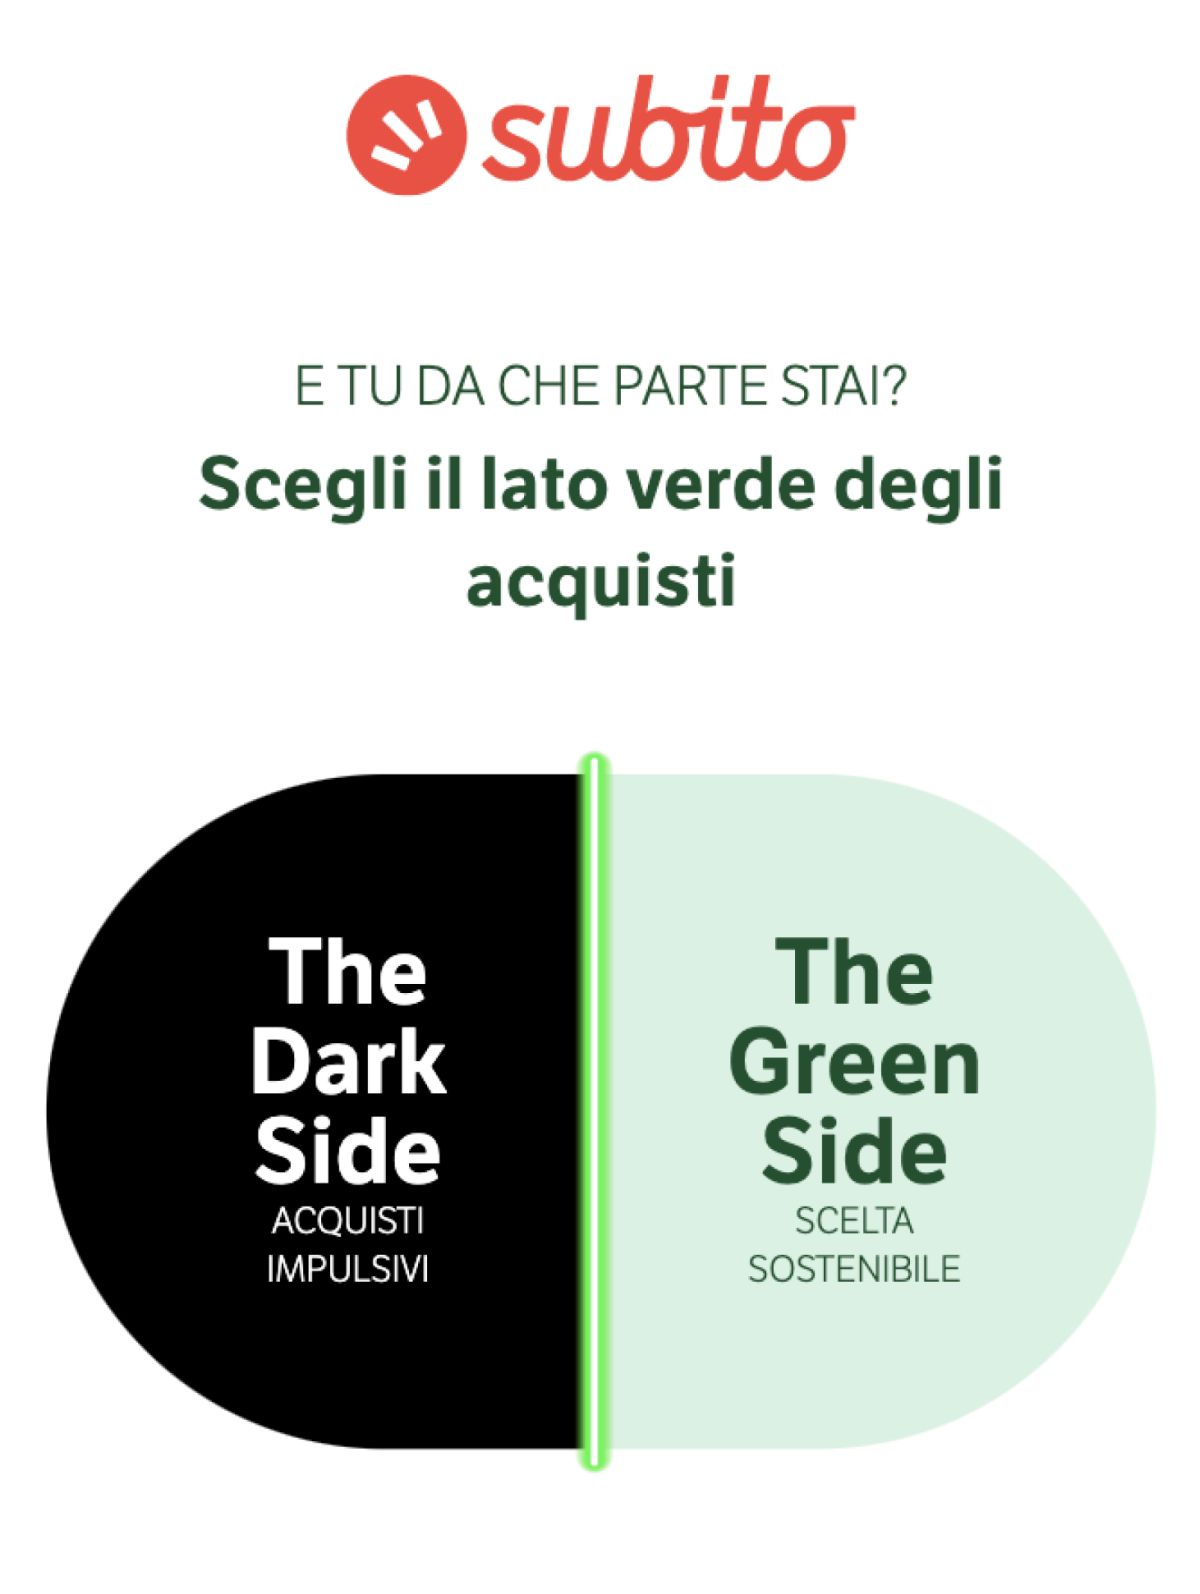 Subito e il progetto The Green Side